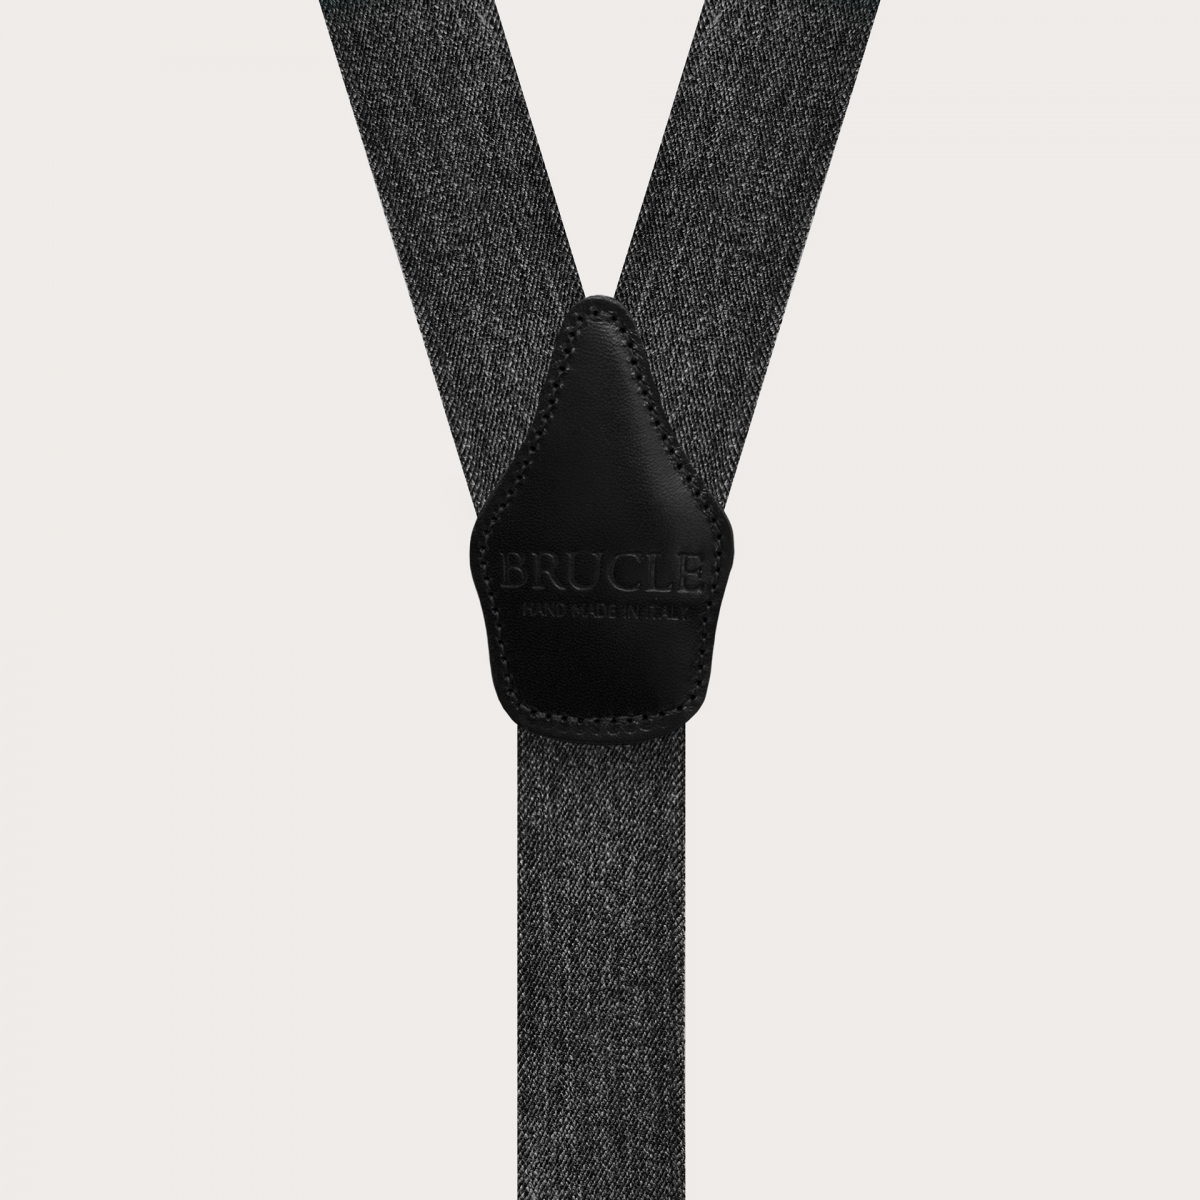 BRUCLE Bretelle elastiche doppio uso jeans nere